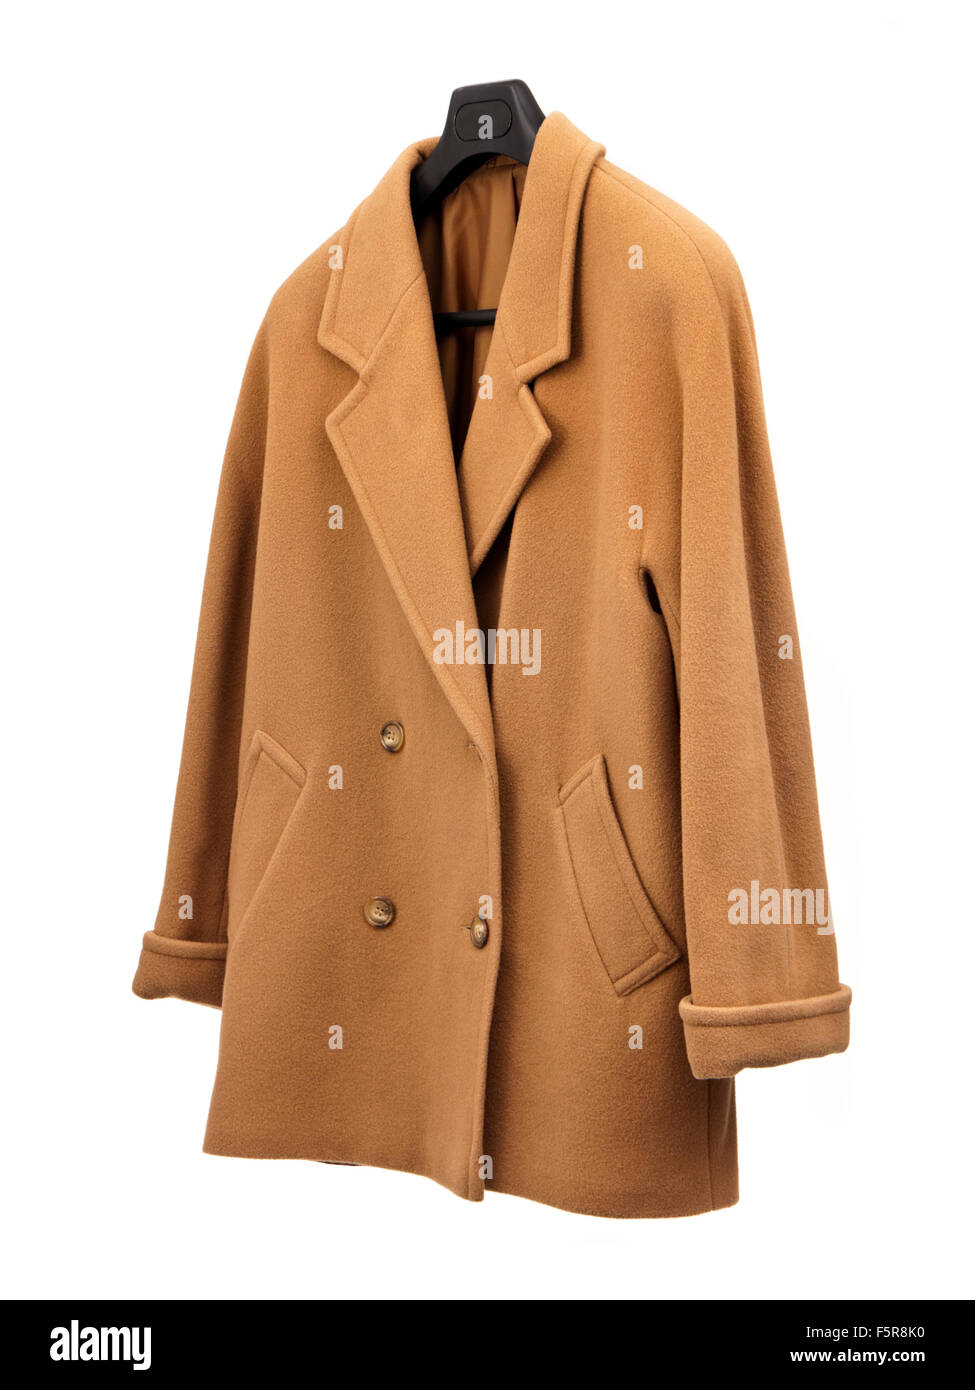 St Michael (Marks & Spencer) pure laine vierge manteau d'hiver Banque D'Images